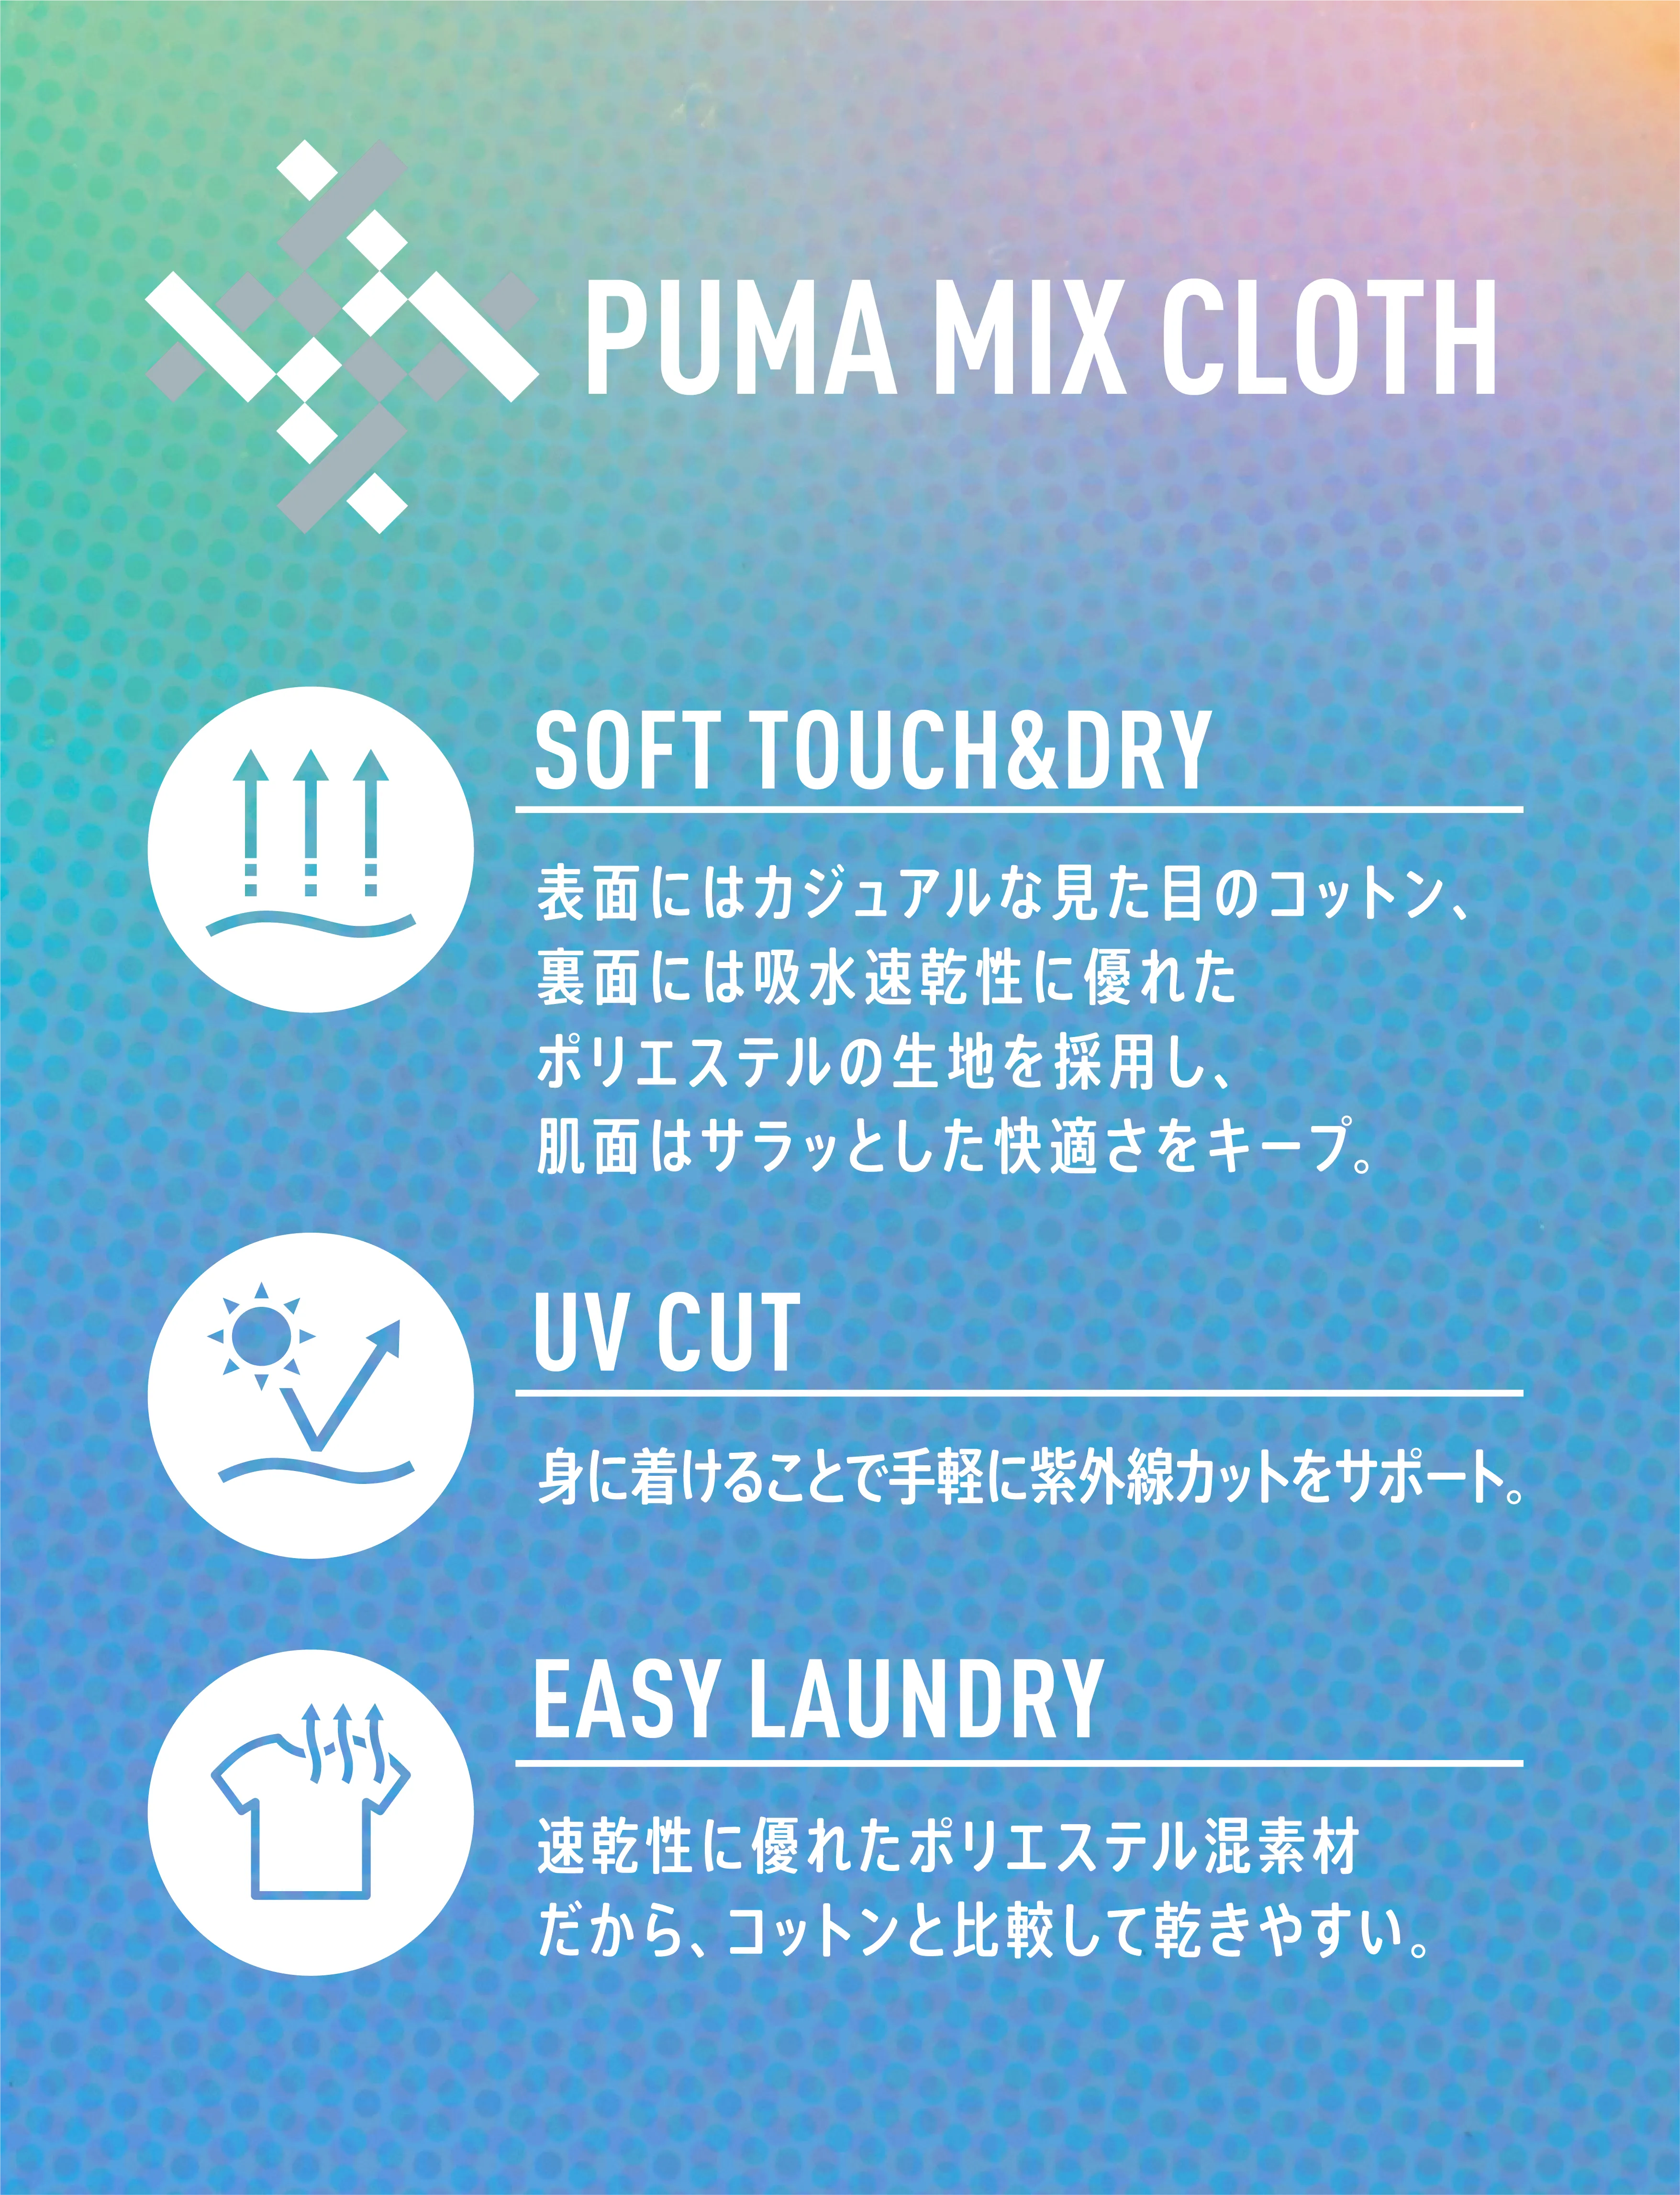 PUMA MIX CLOTH